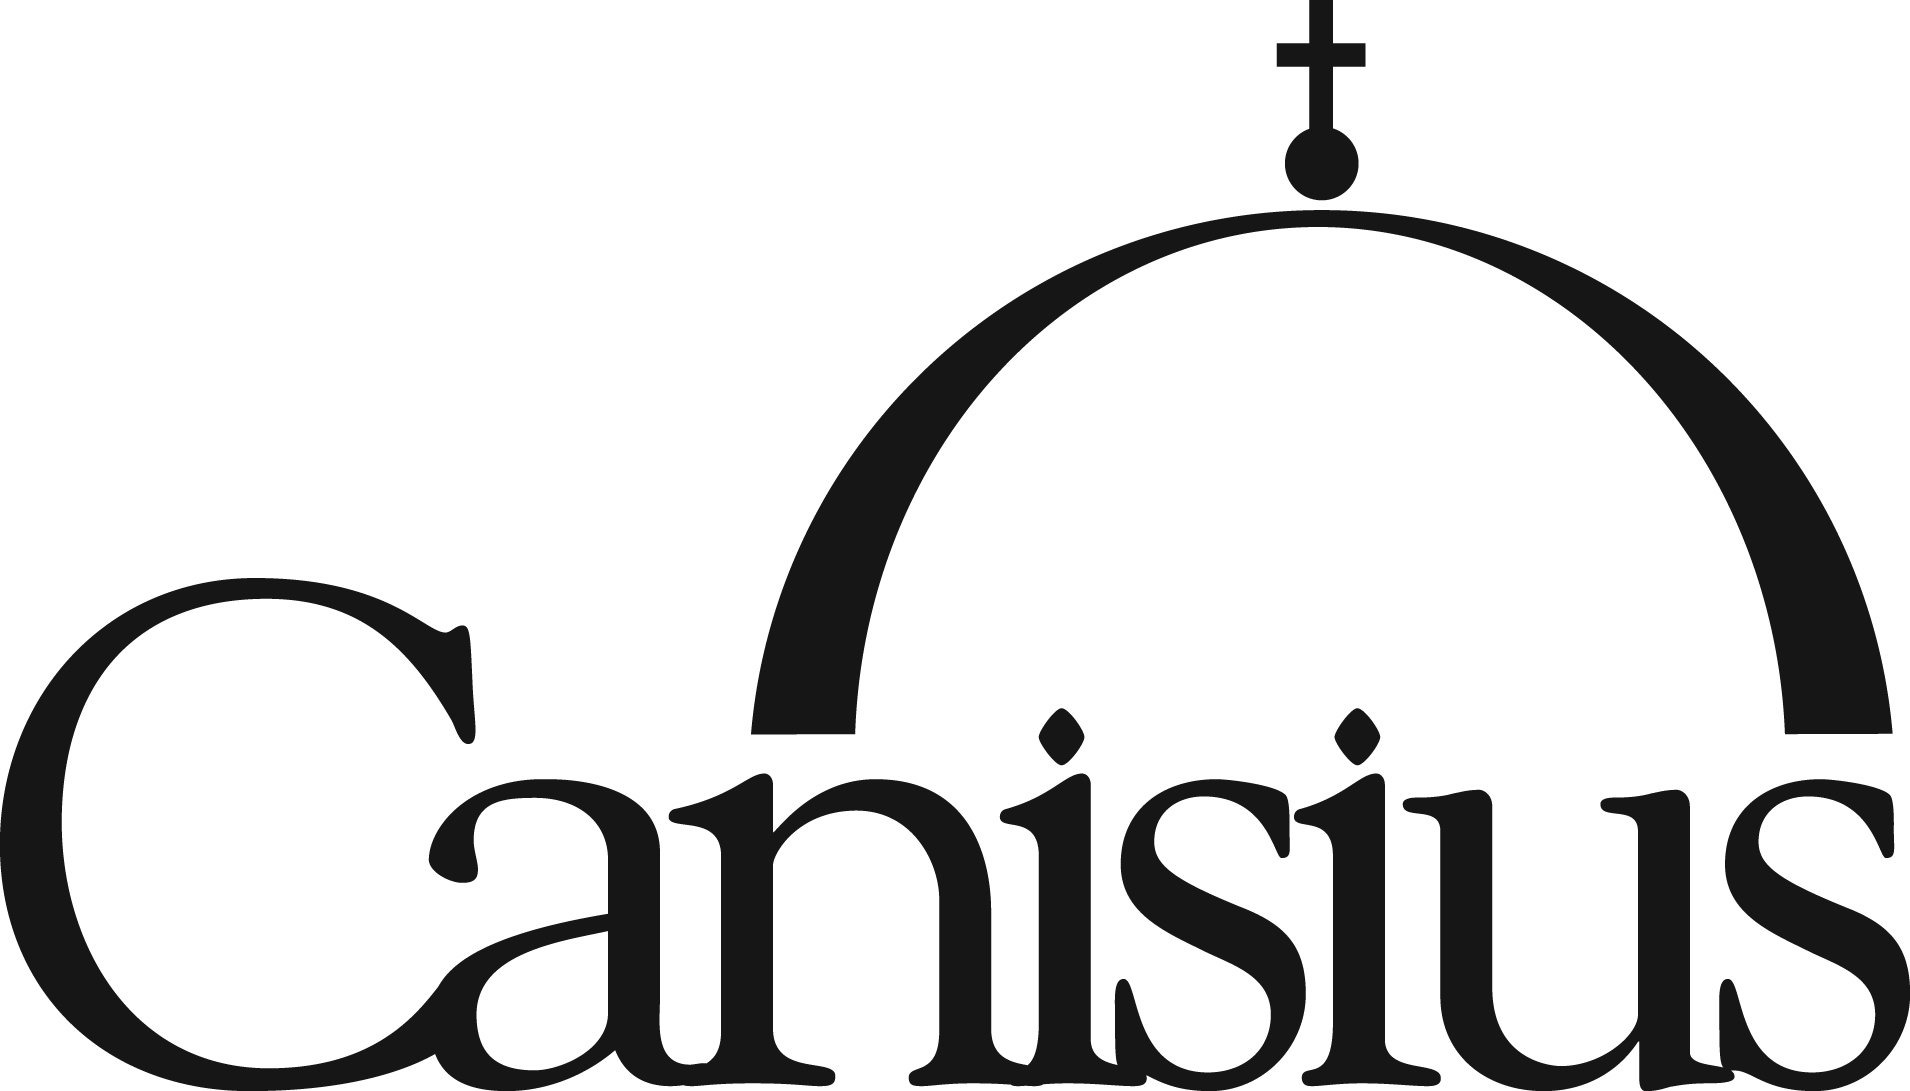 CANISIUS